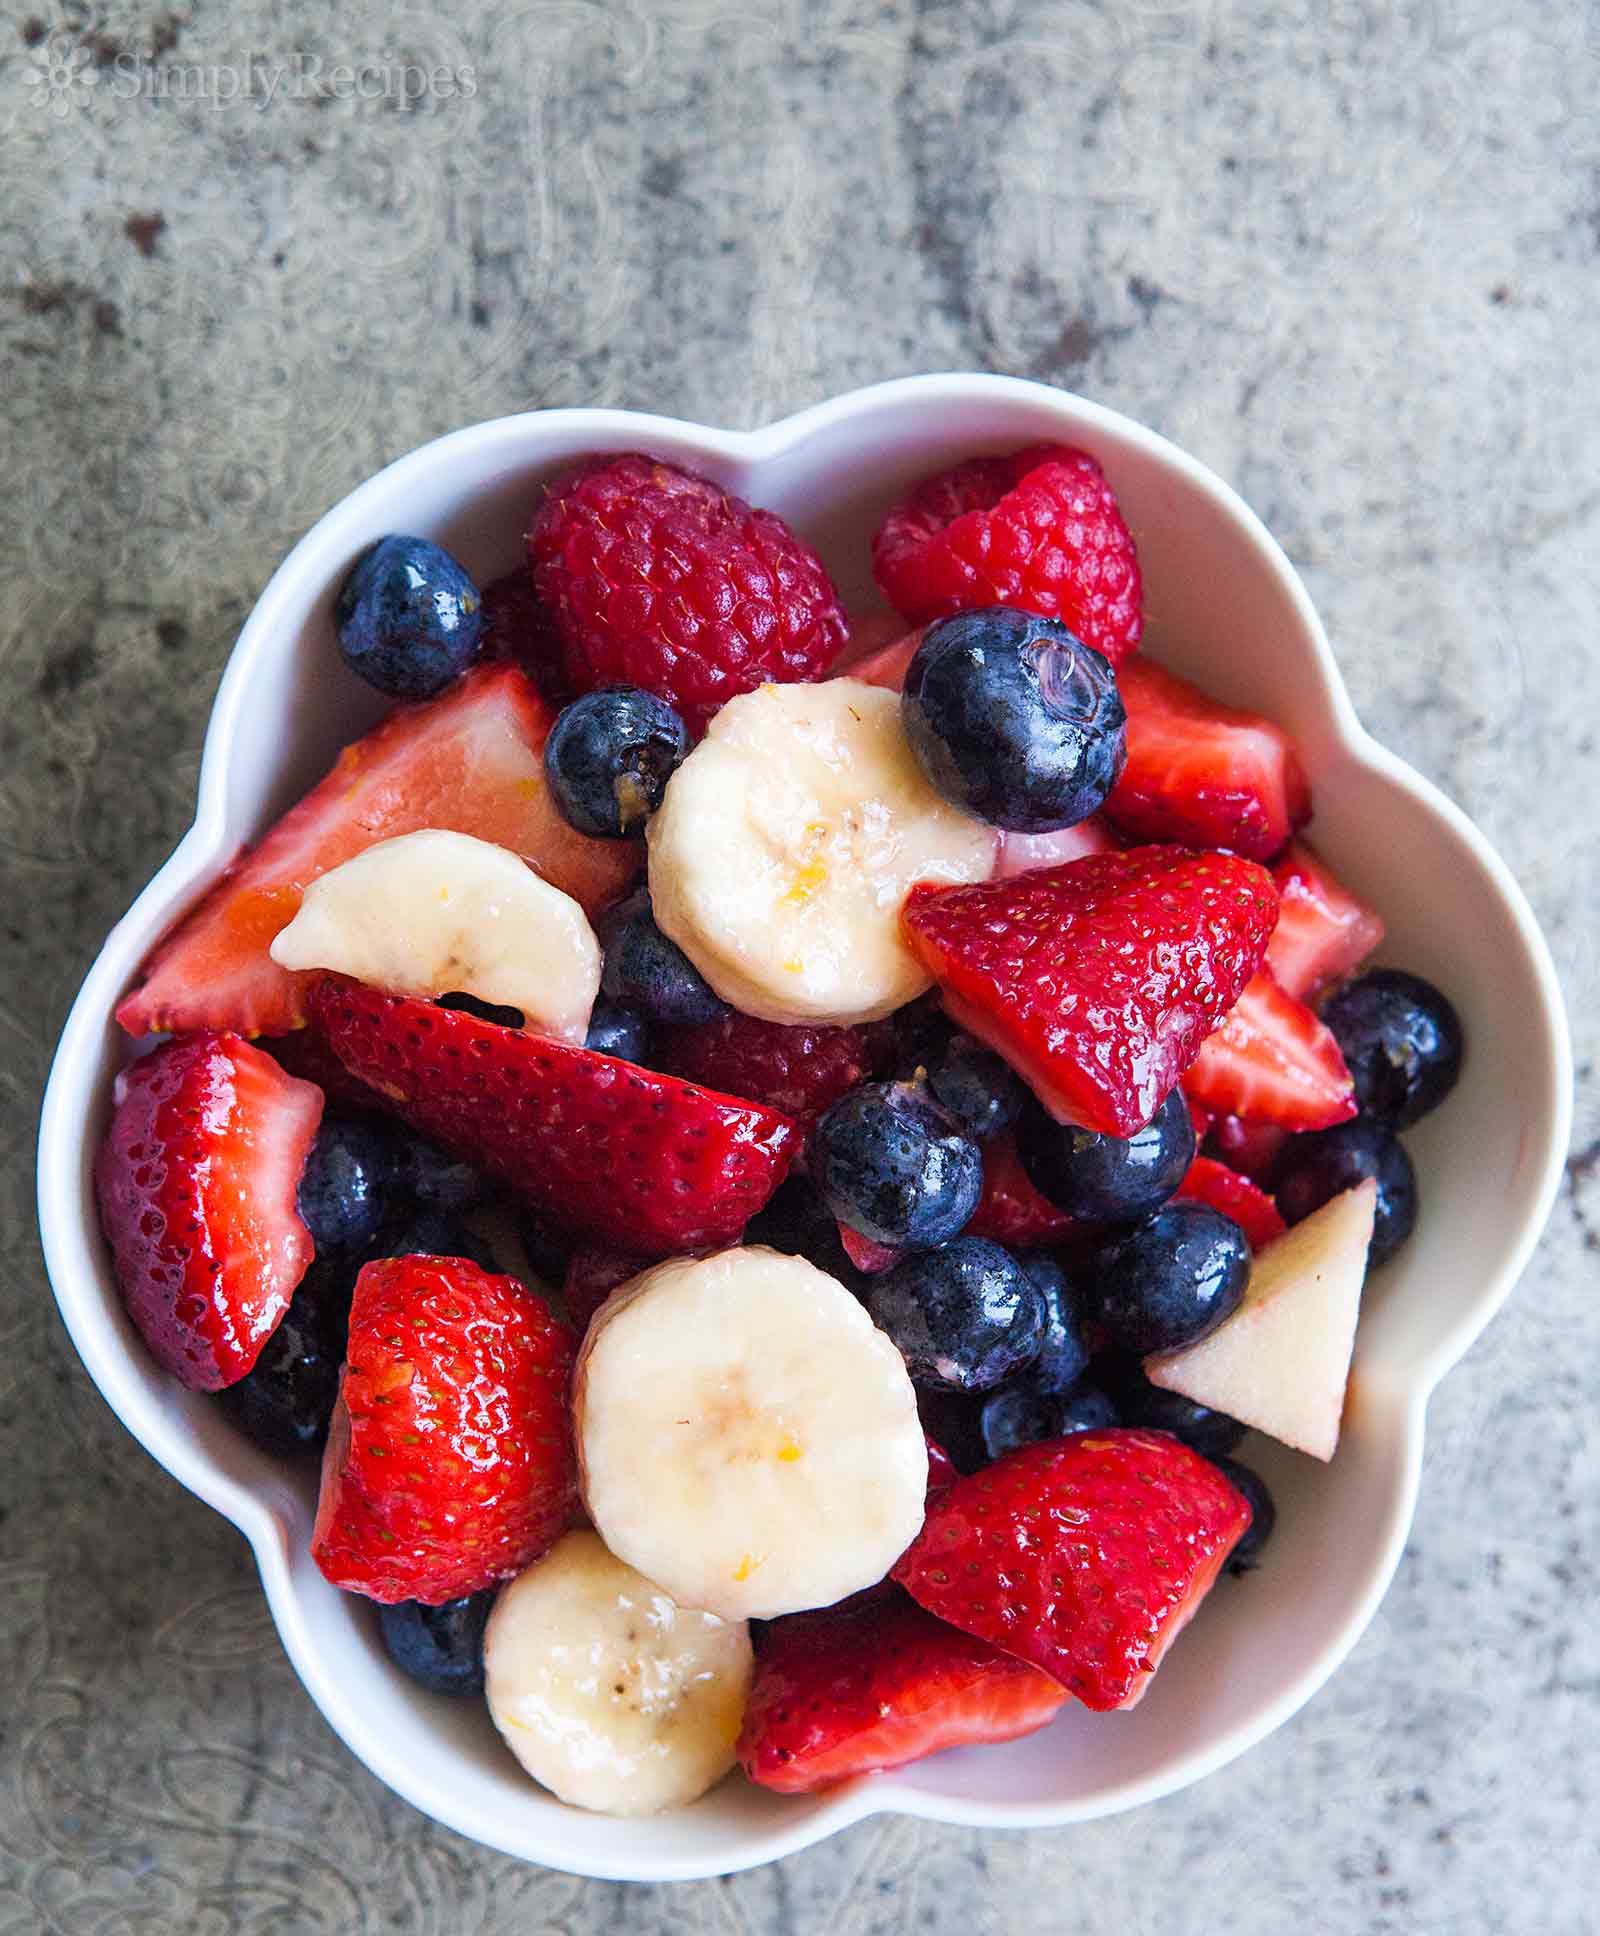 Berries and Banana Fruit Salad Recipe | SimplyRecipes.com